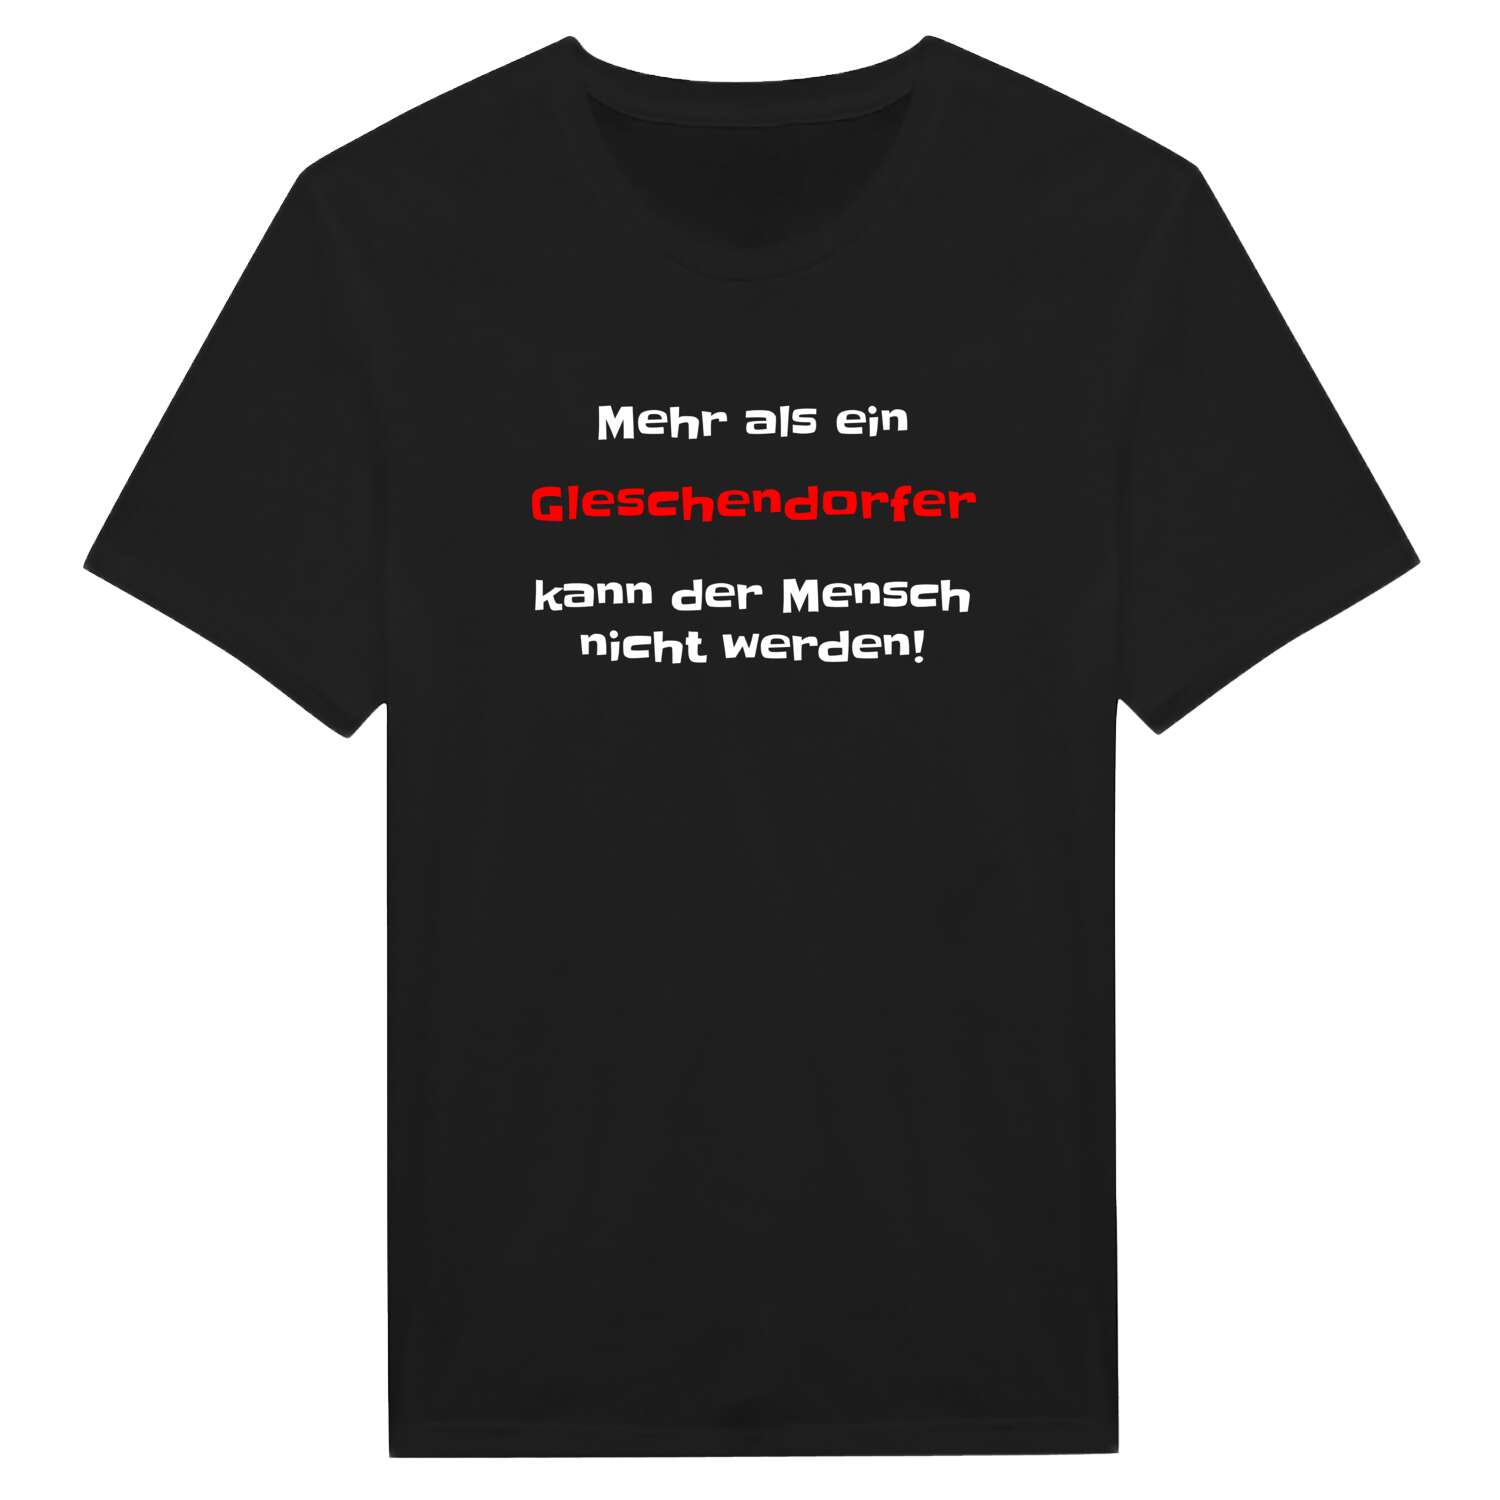 Gleschendorf T-Shirt »Mehr als ein«